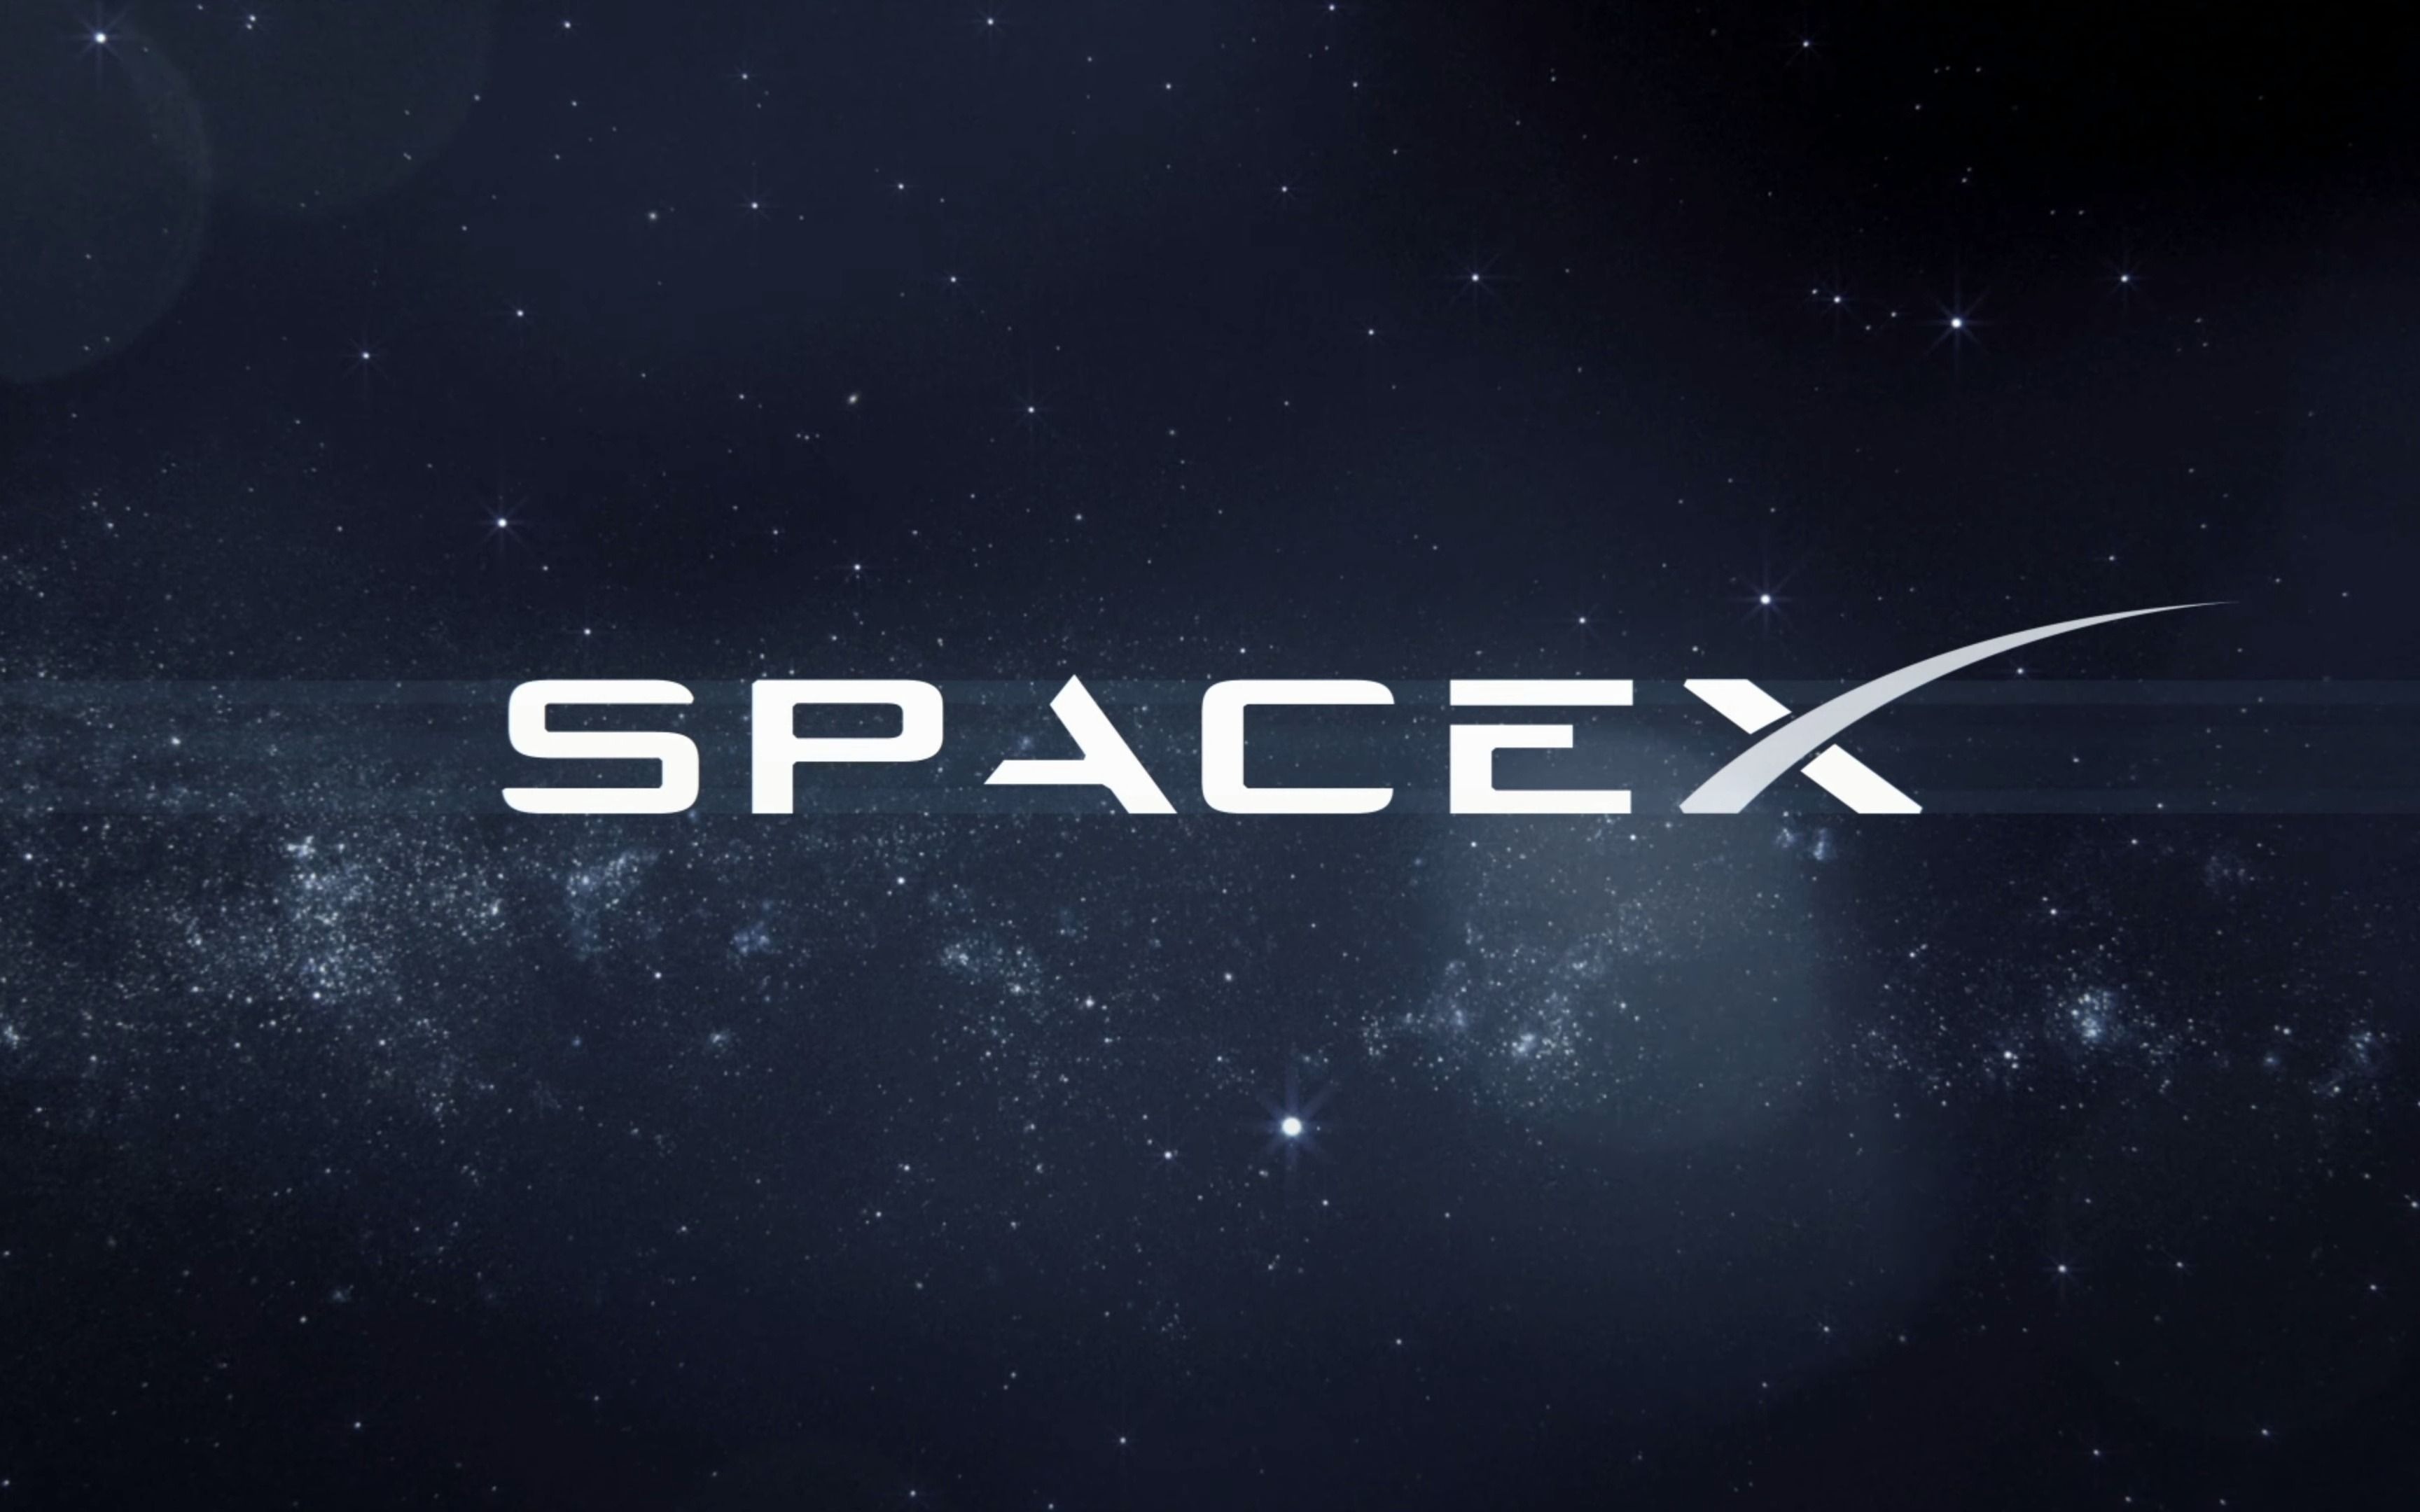 spacex官网壁纸图片